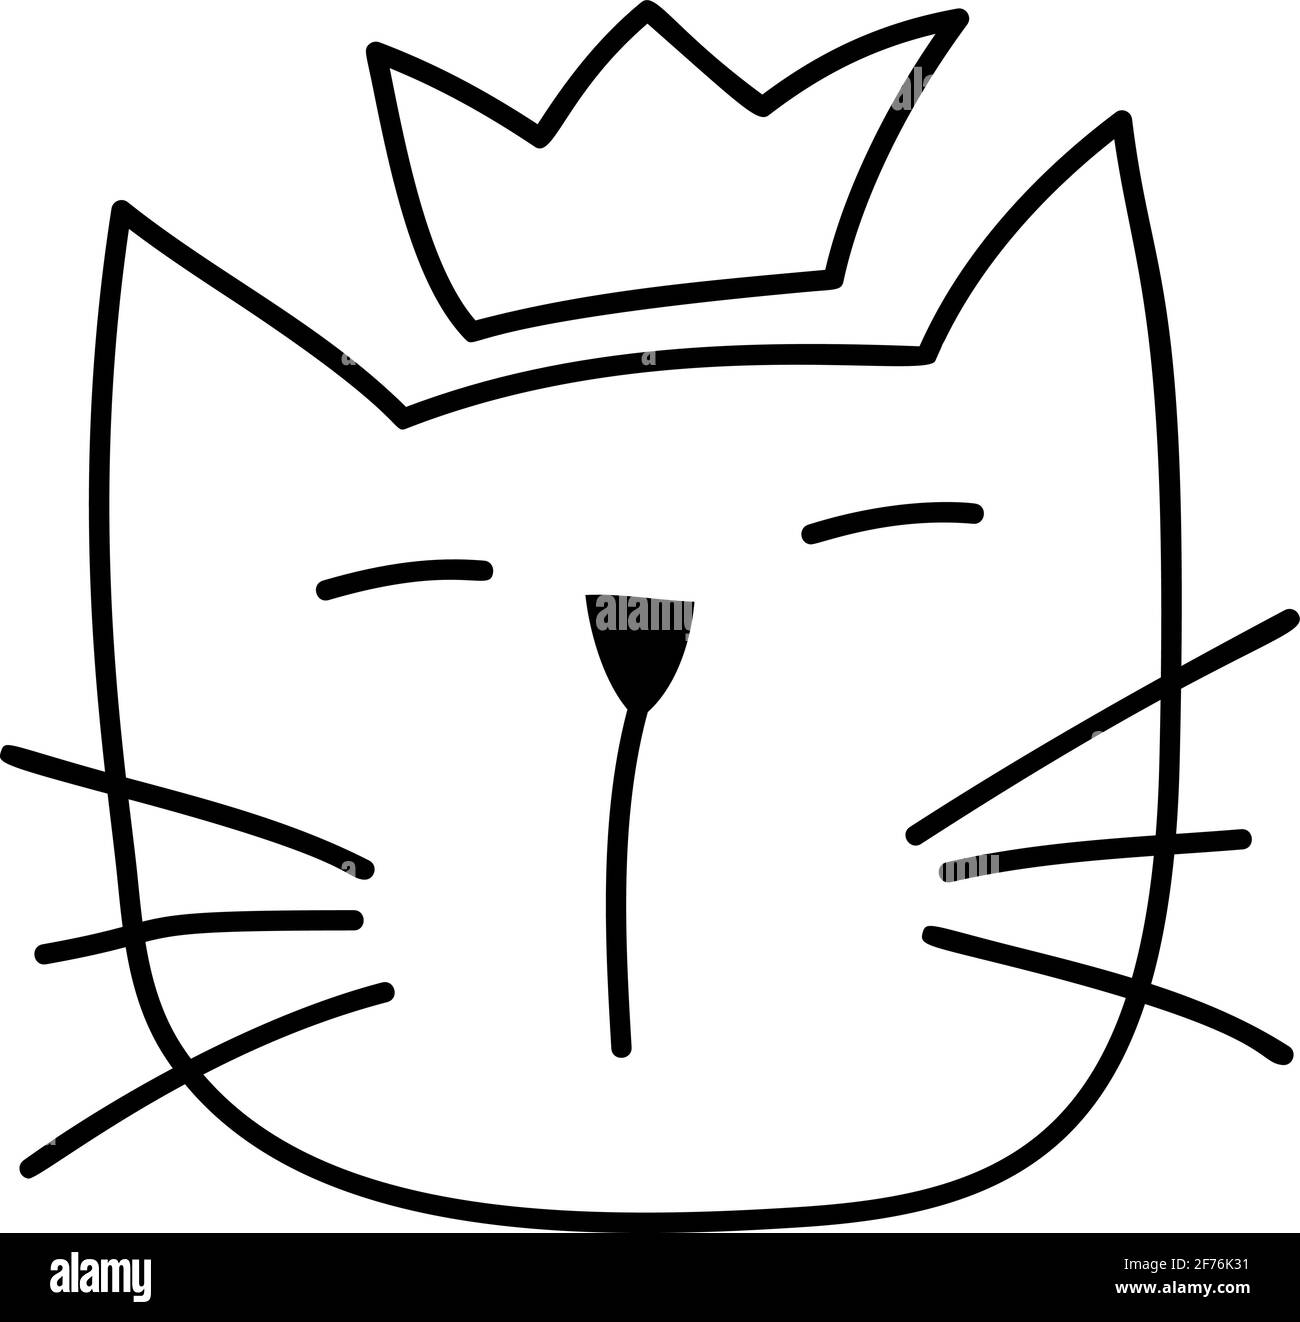 Lindo negro línea cara de gato escandinavo. Dibujo a mano de un plano. Elemento de diseño de camiseta, textiles para el hogar, papel para envolver, niños Ilustración del Vector